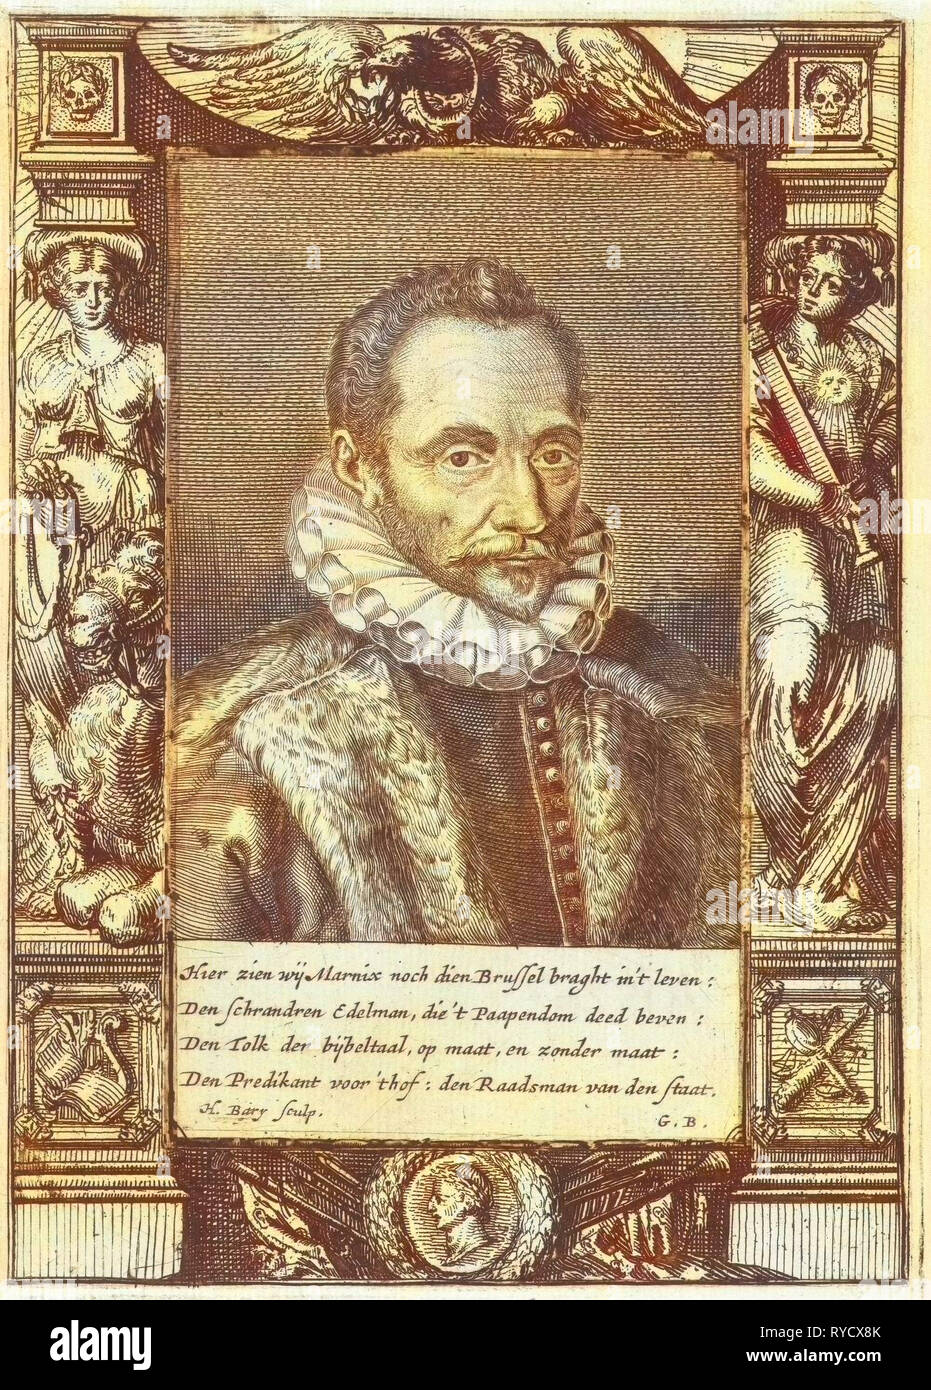 Portrait of Filips van Marnix heer van St. Aldegonde. Hendrik Bary, Geeraert Brandt (I), 1657 - 1707 Stock Photo